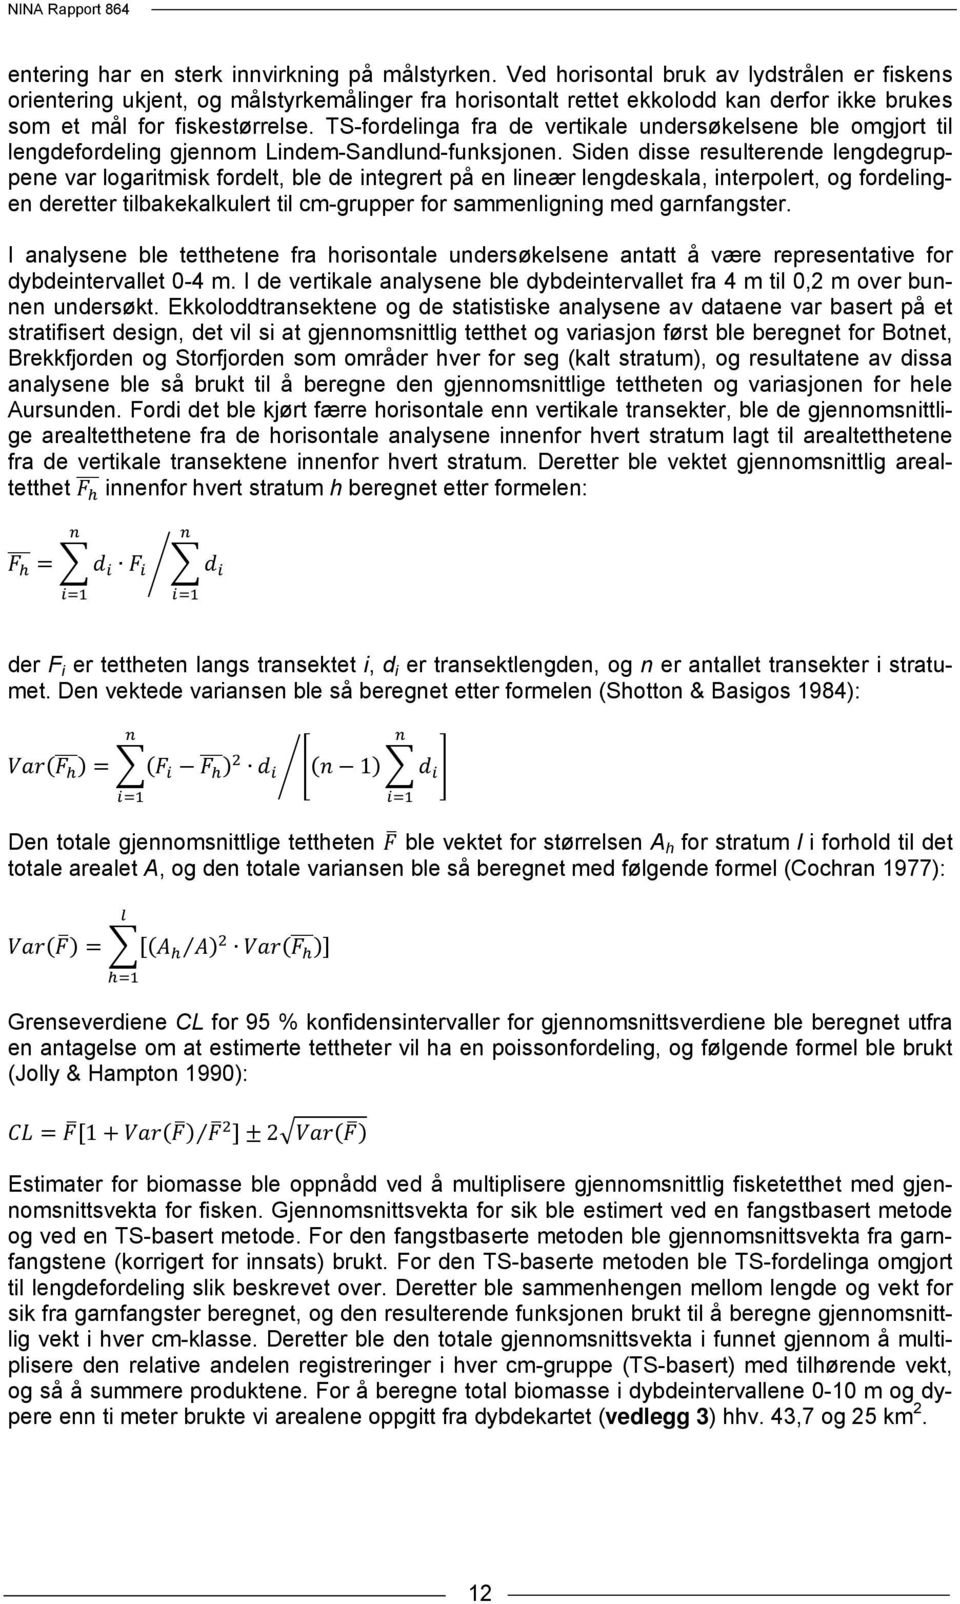 TS-fordelinga fra de vertikale undersøkelsene ble omgjort til lengdefordeling gjennom Lindem-Sandlund-funksjonen.